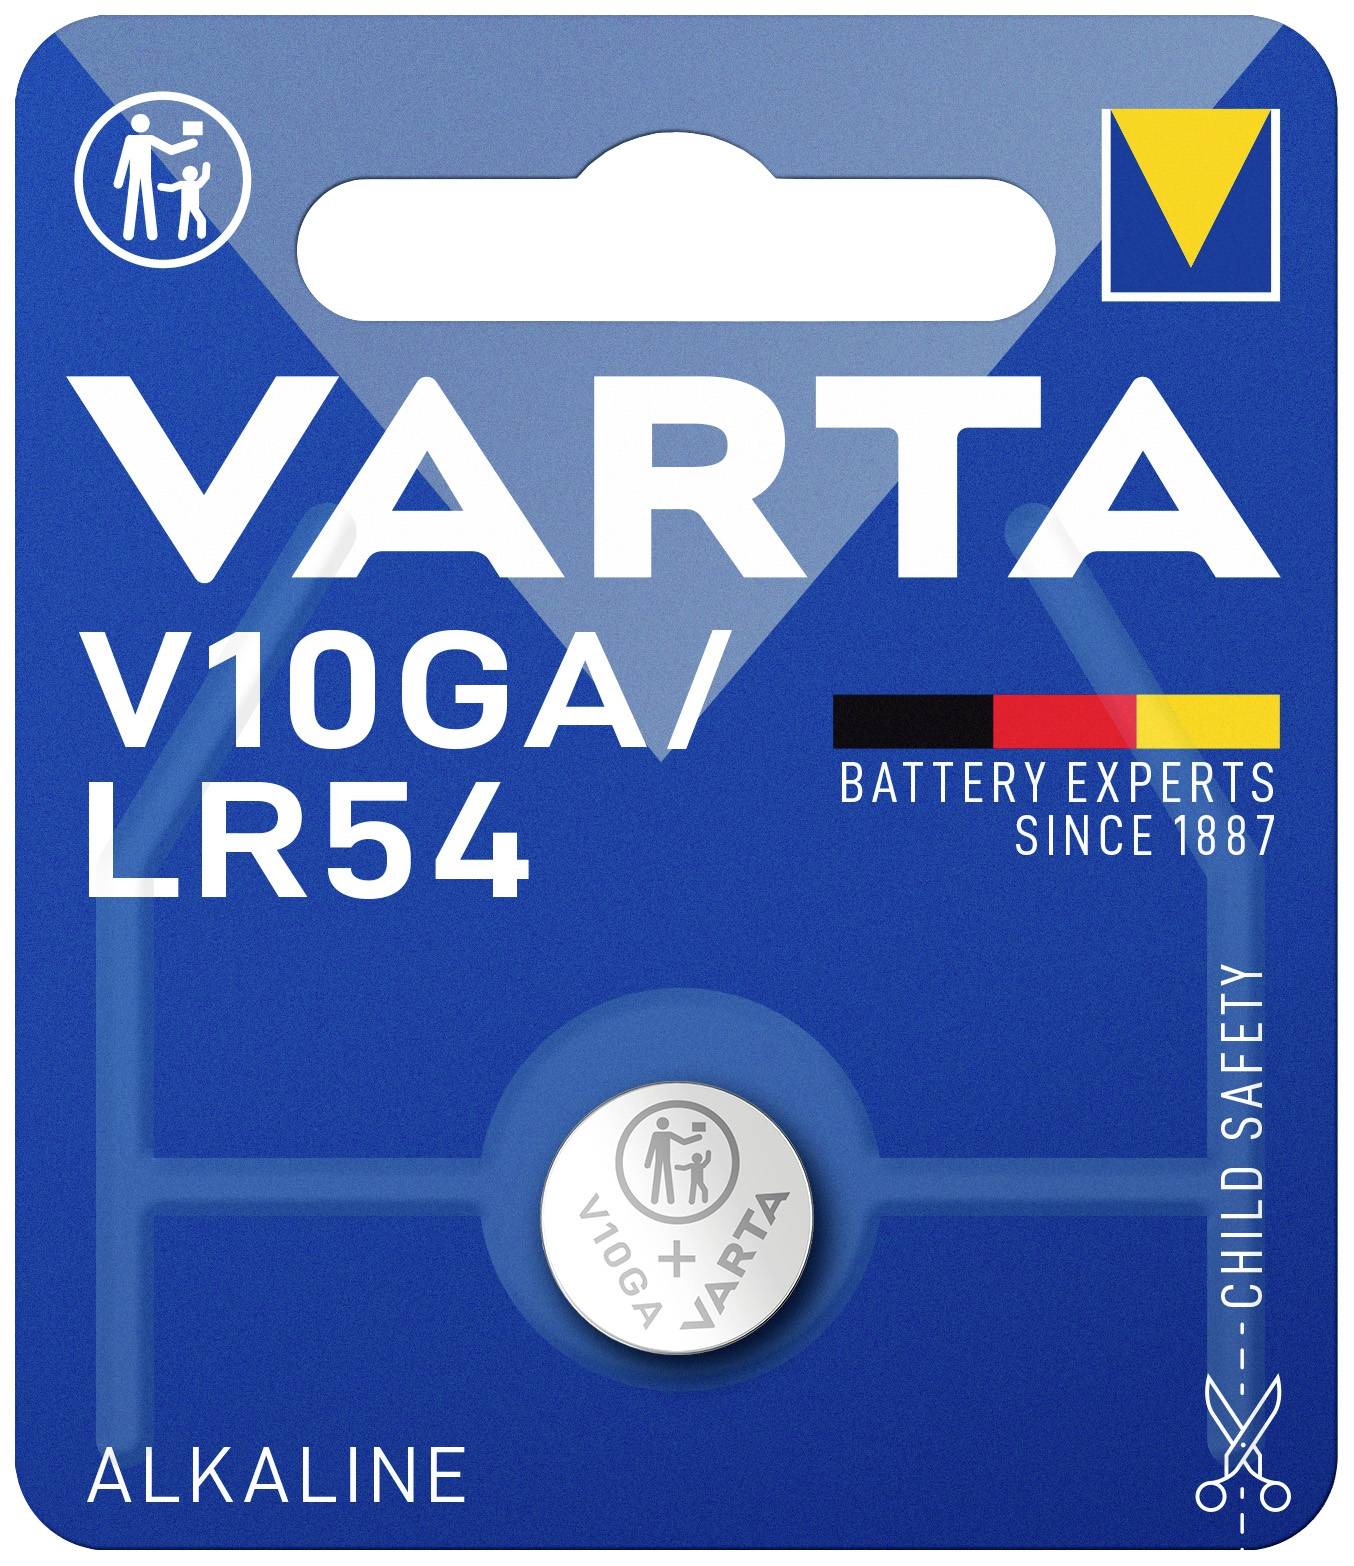 Varta V10GA / LR54 alkaline battery